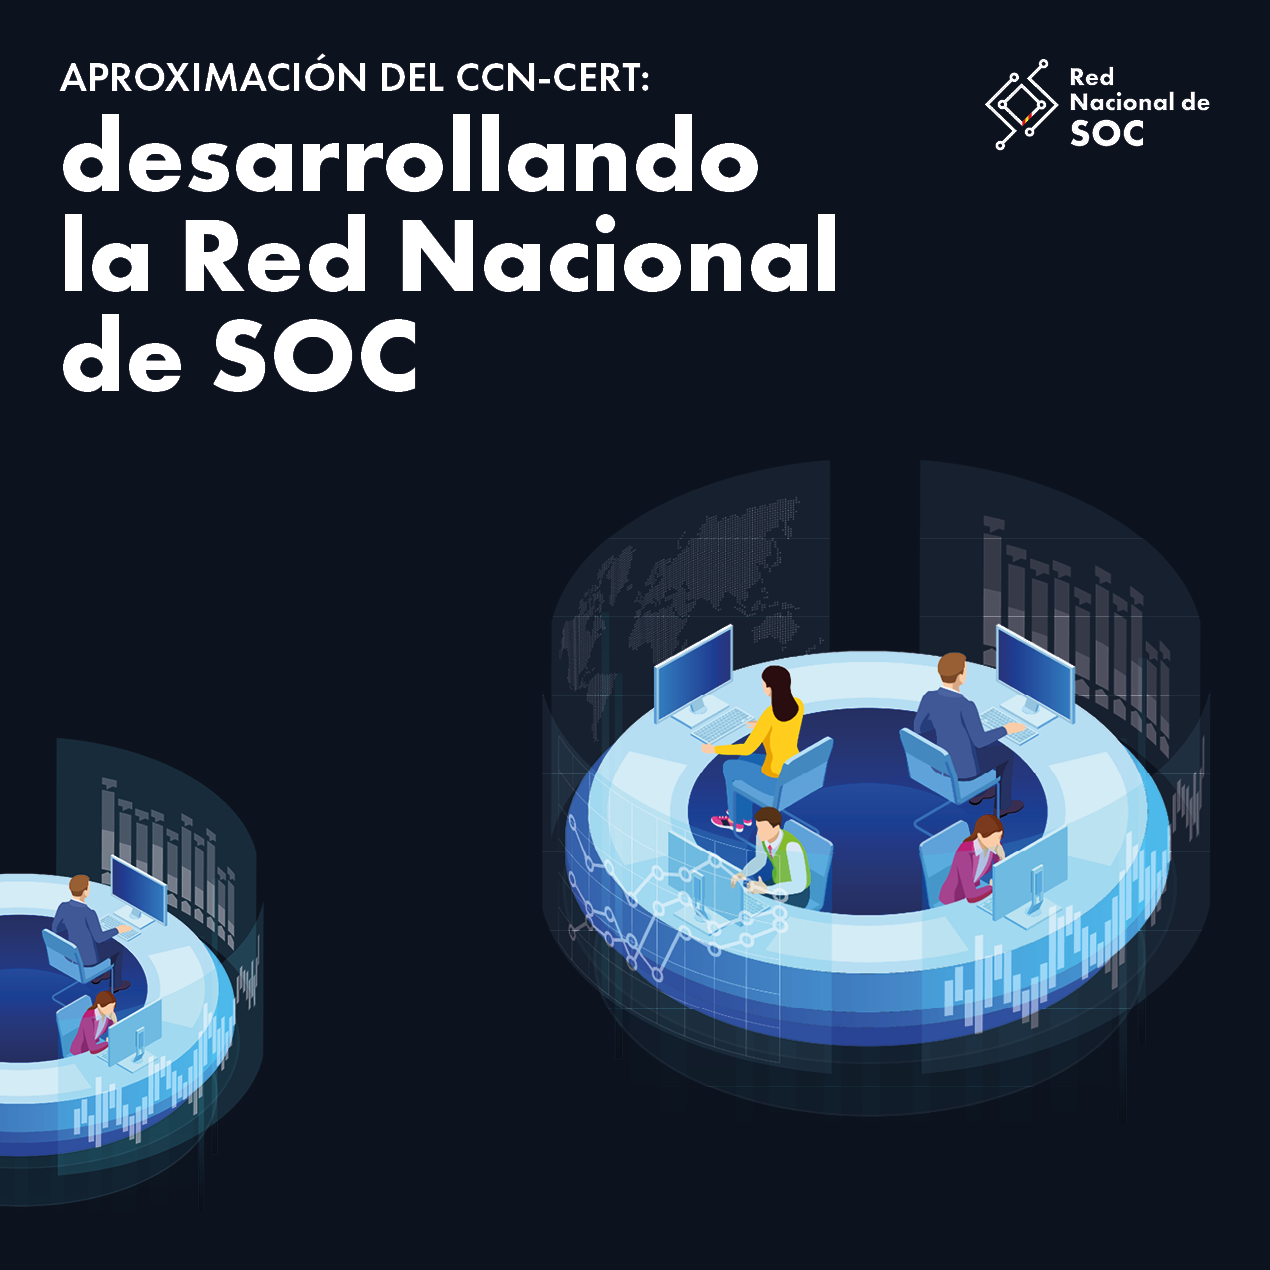 Aproximación del CCN-CERT: desarrollando la Red Nacional de SOC